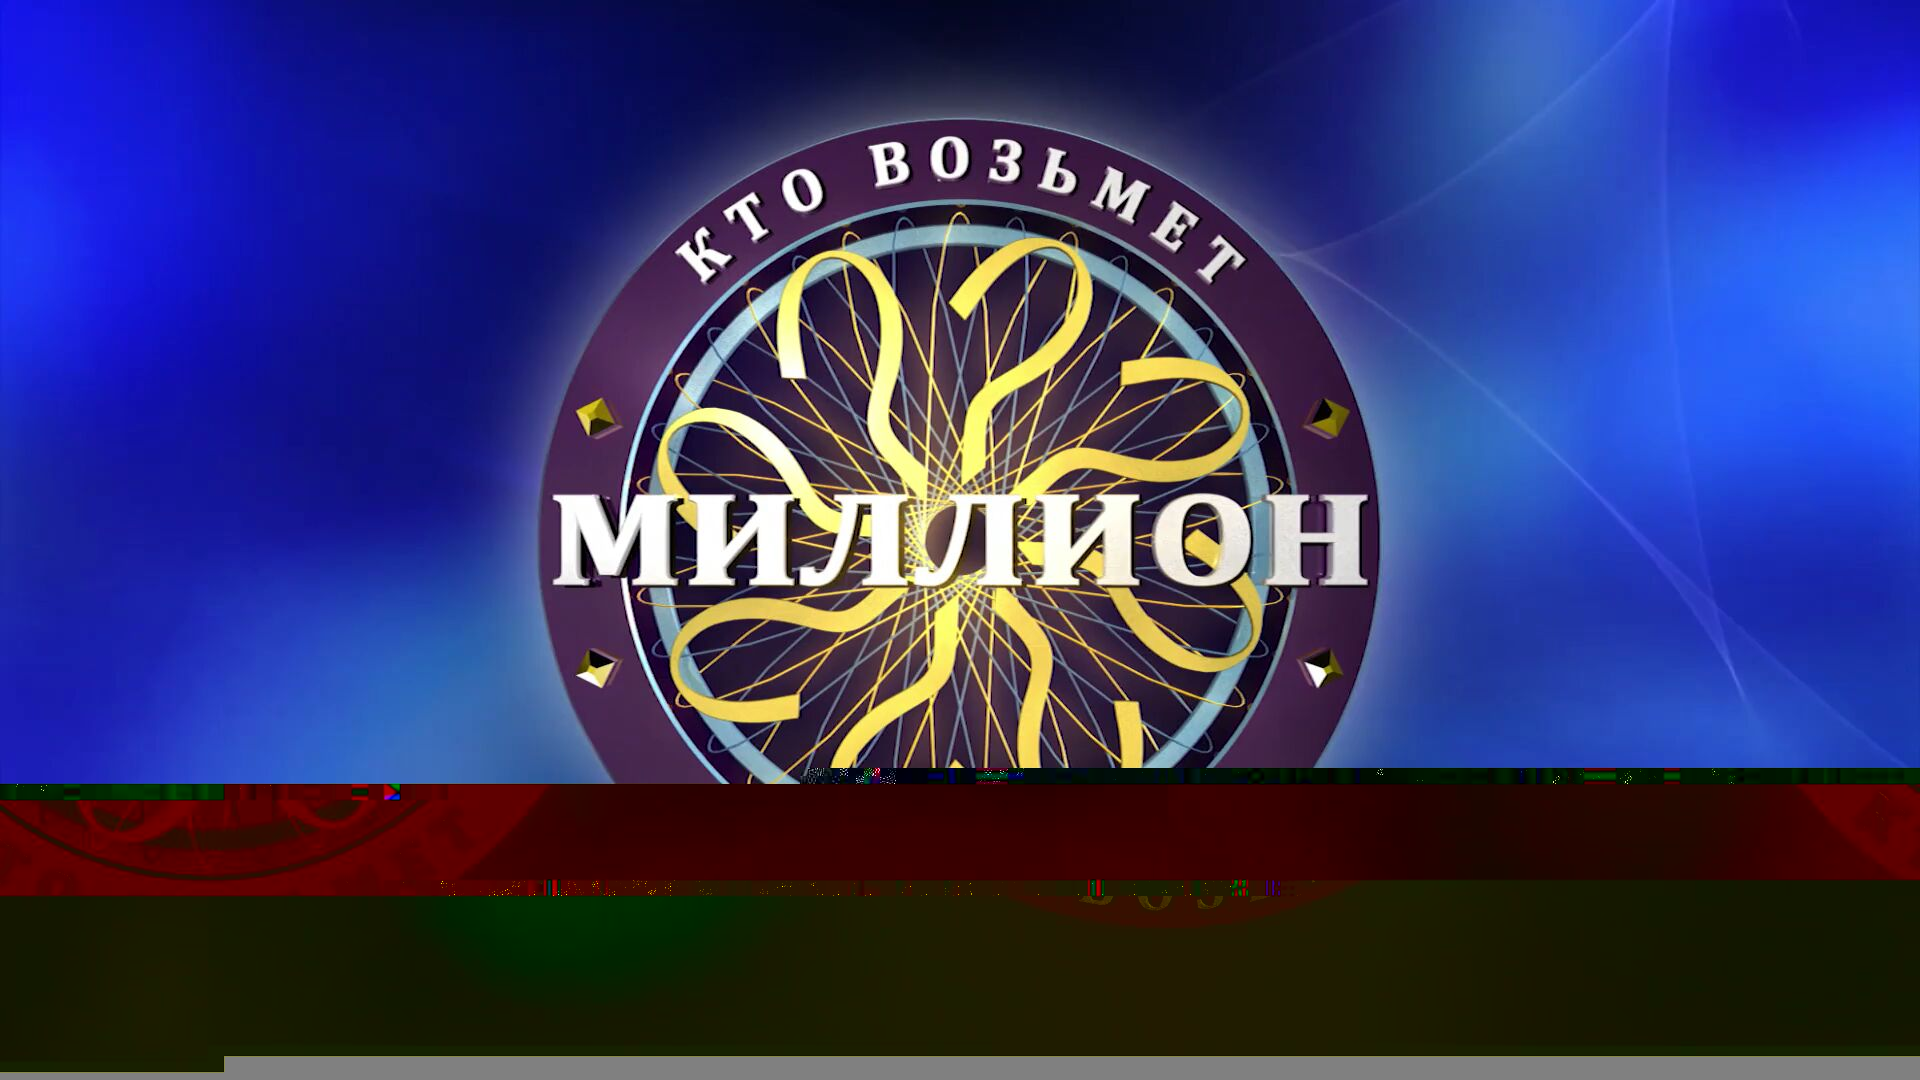 Kvm logo 2017.jpg